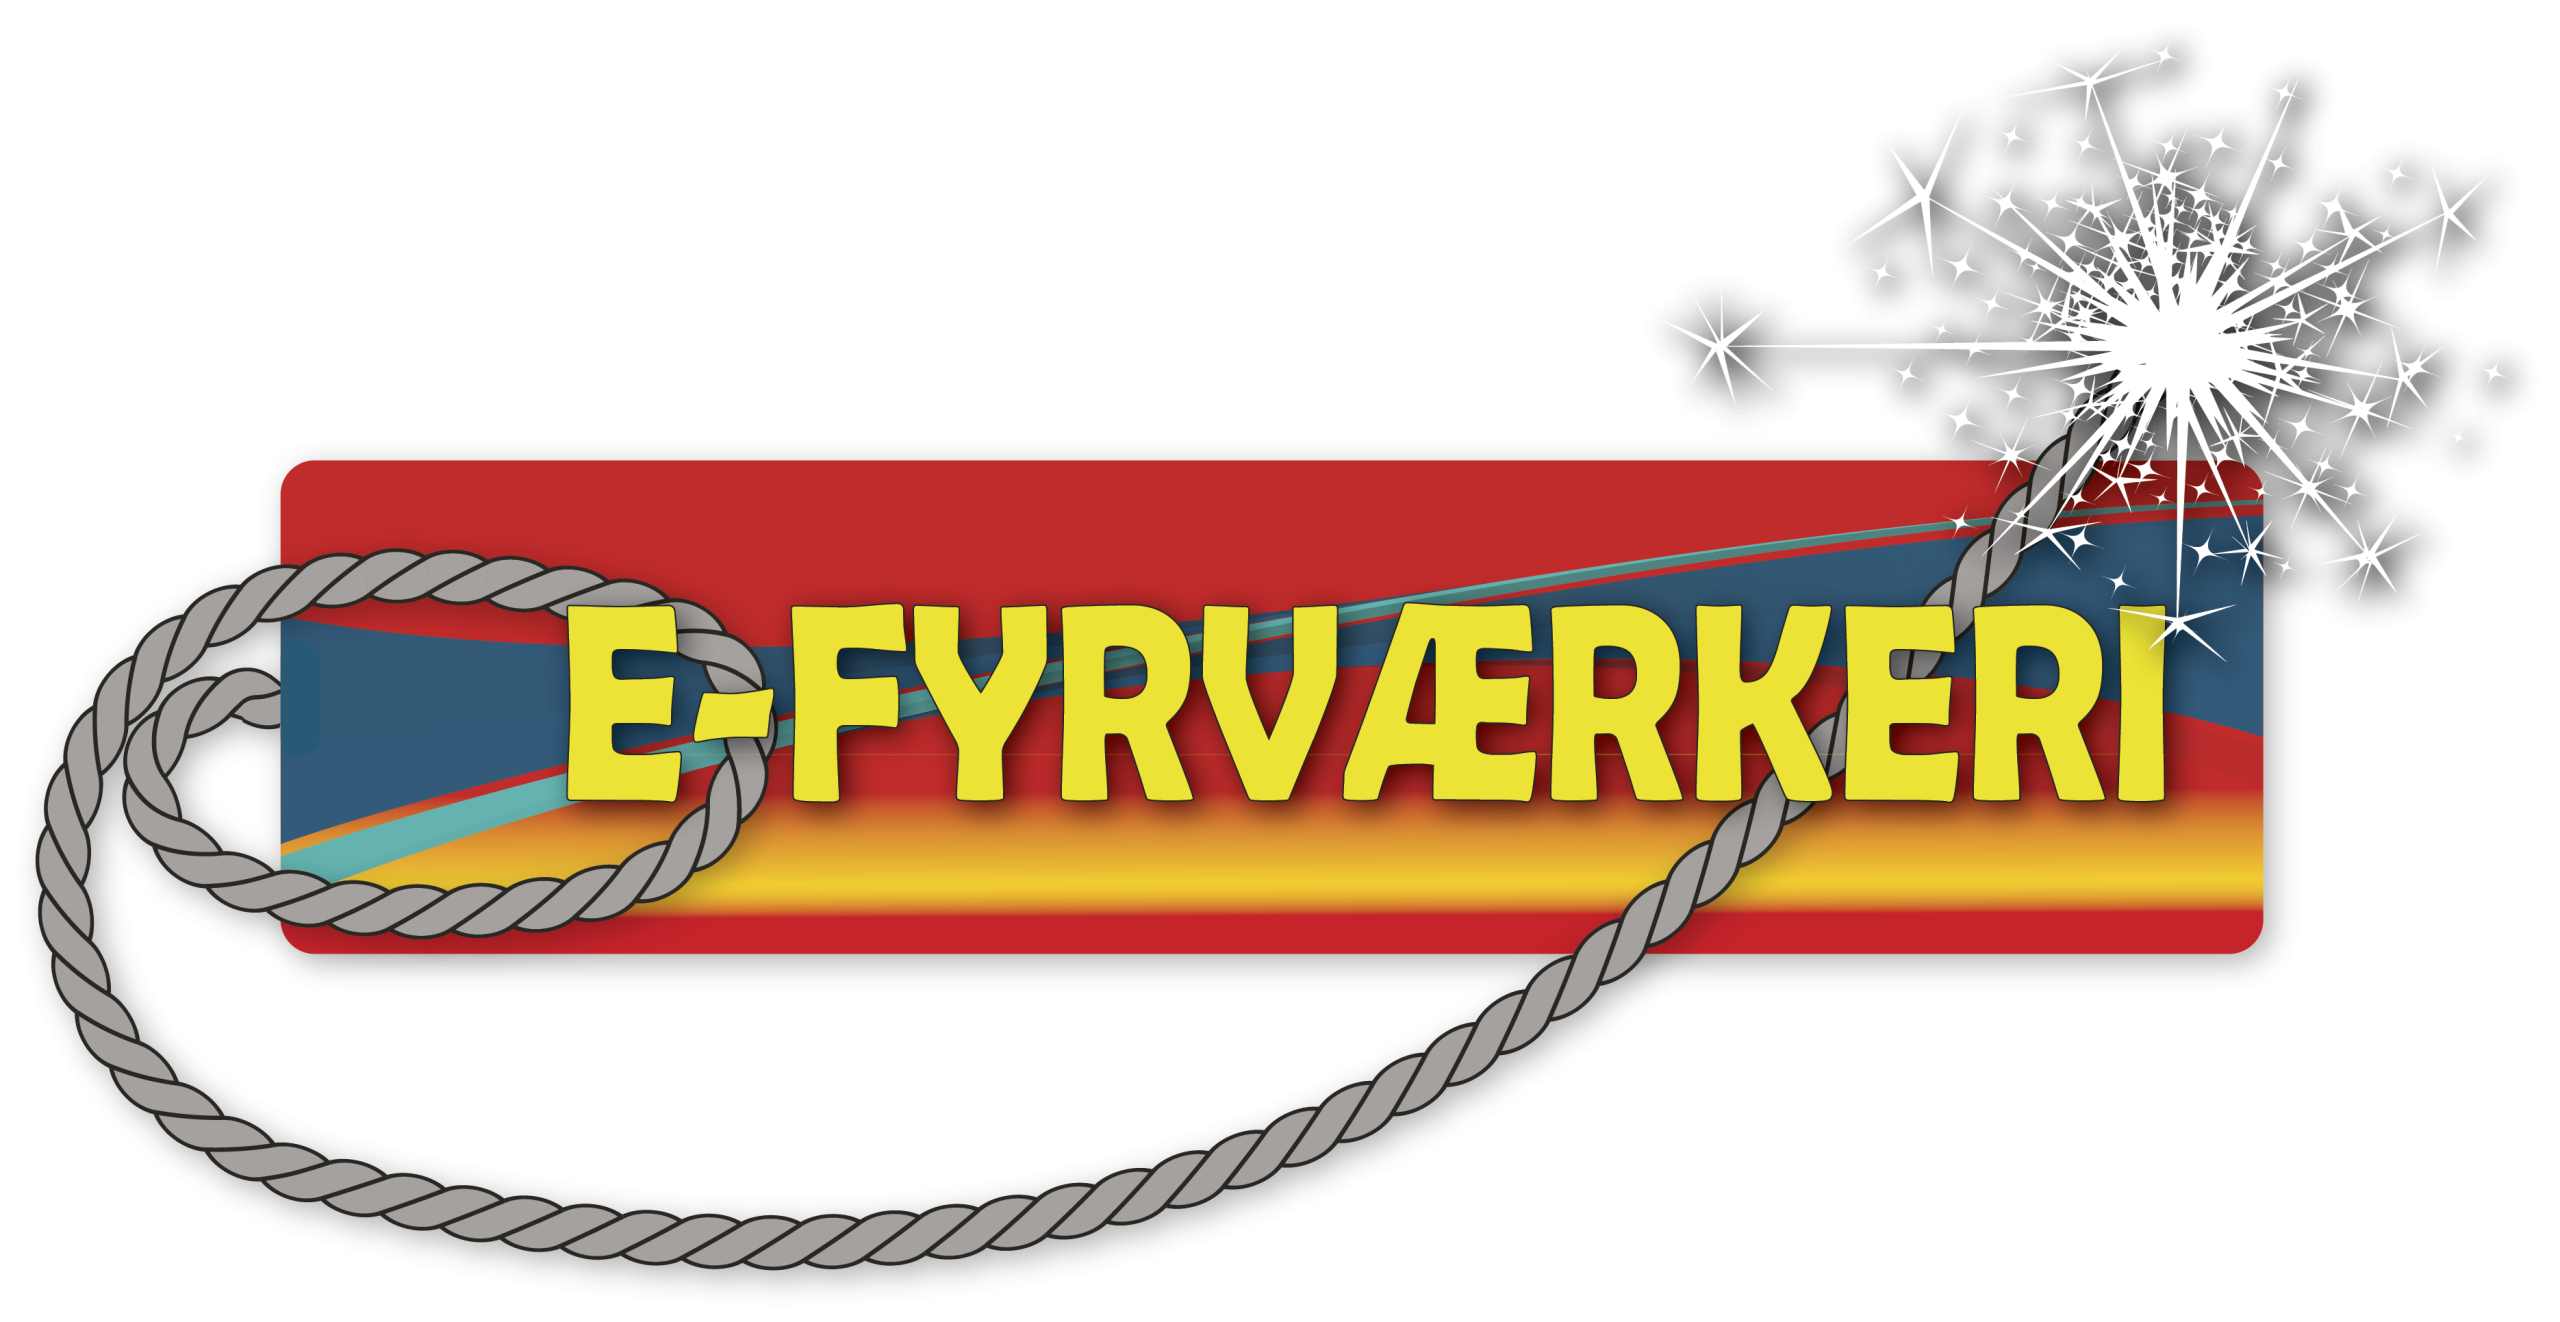 e-fyrværkeri - Fyrværkerisalg i Sønderjylland